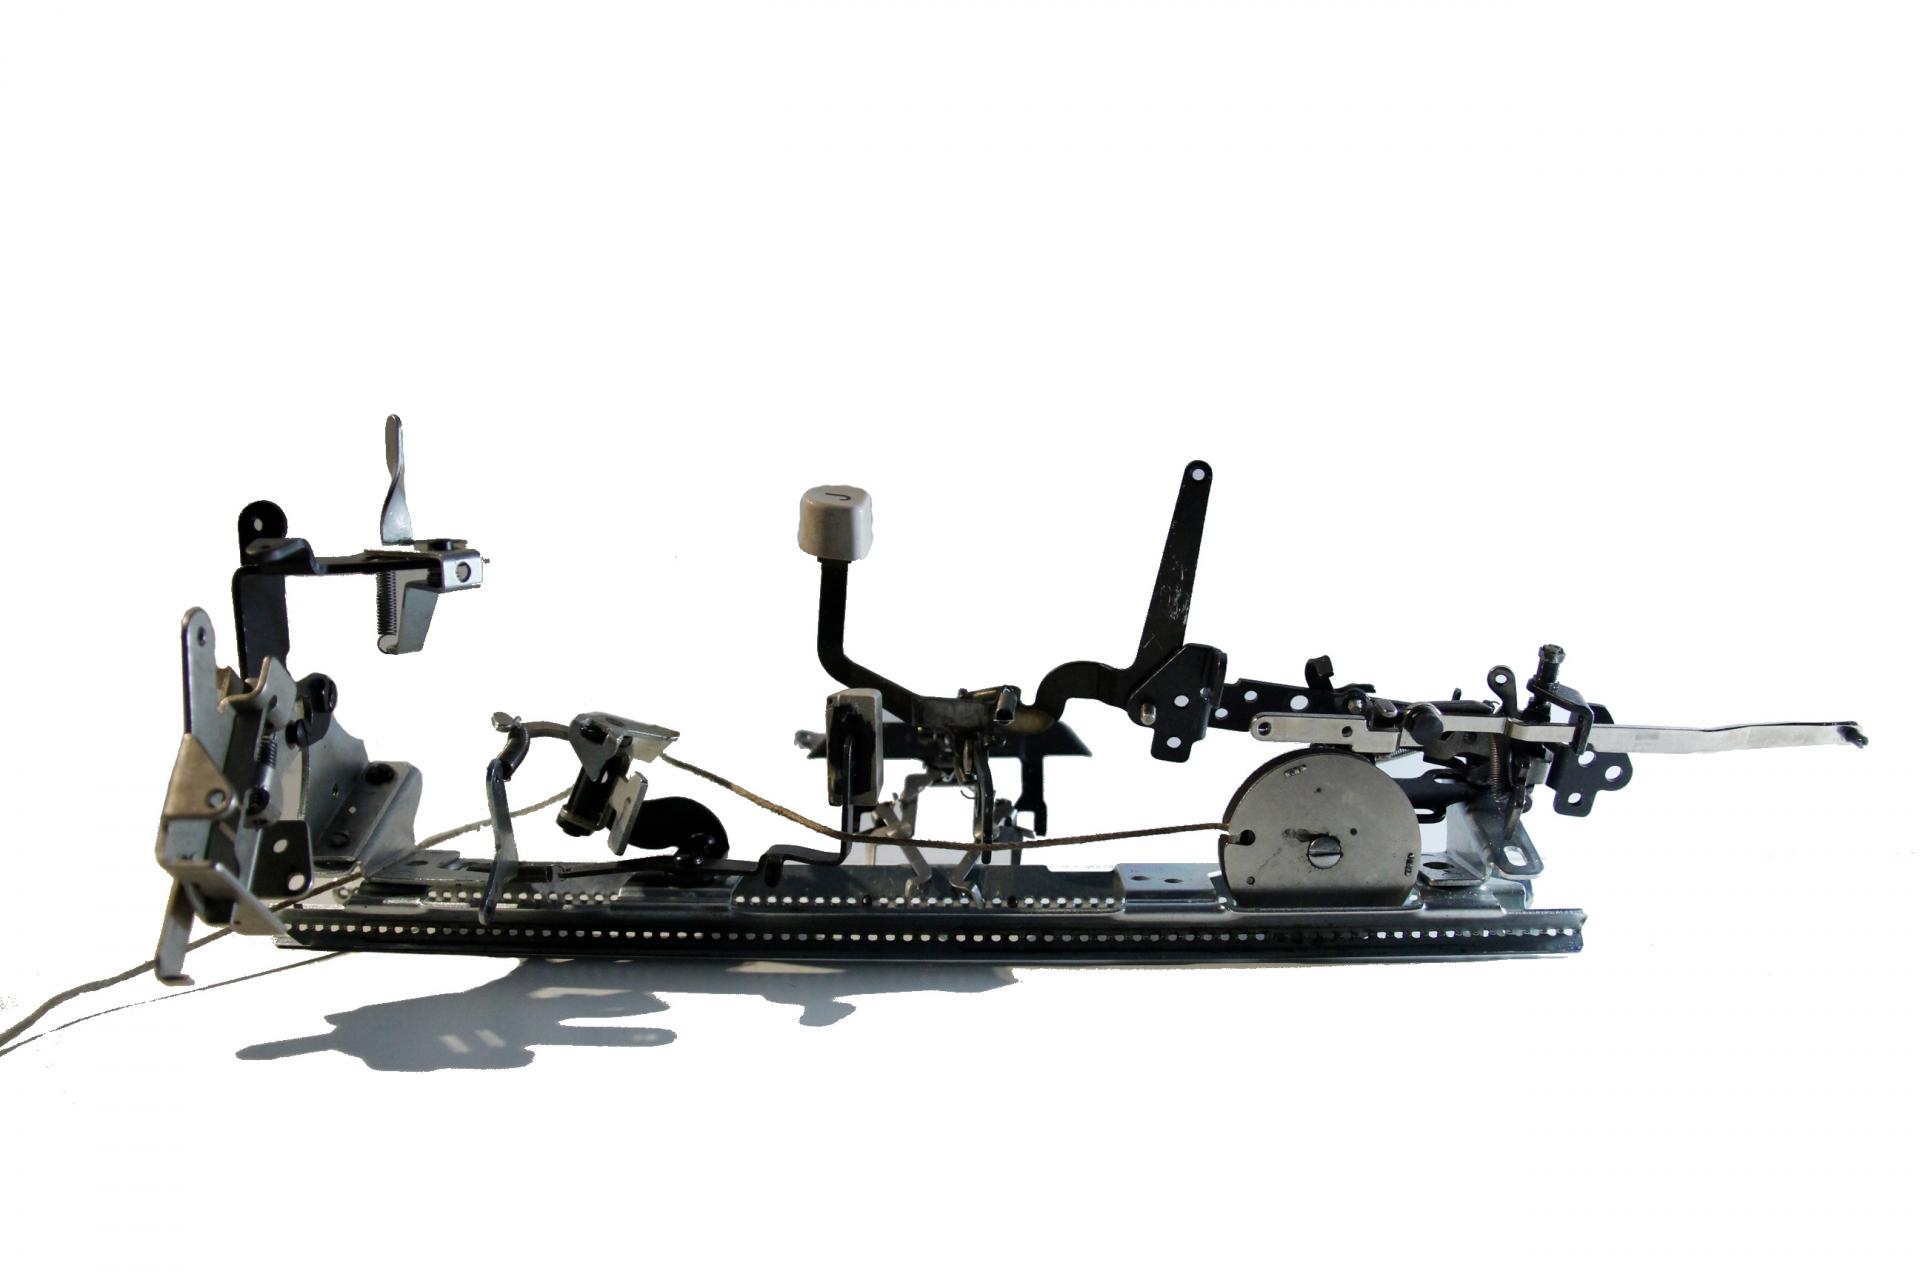 LDAR_Huachen_Zhang_First-Stage-of-Typewriter-reassemble.jpg 